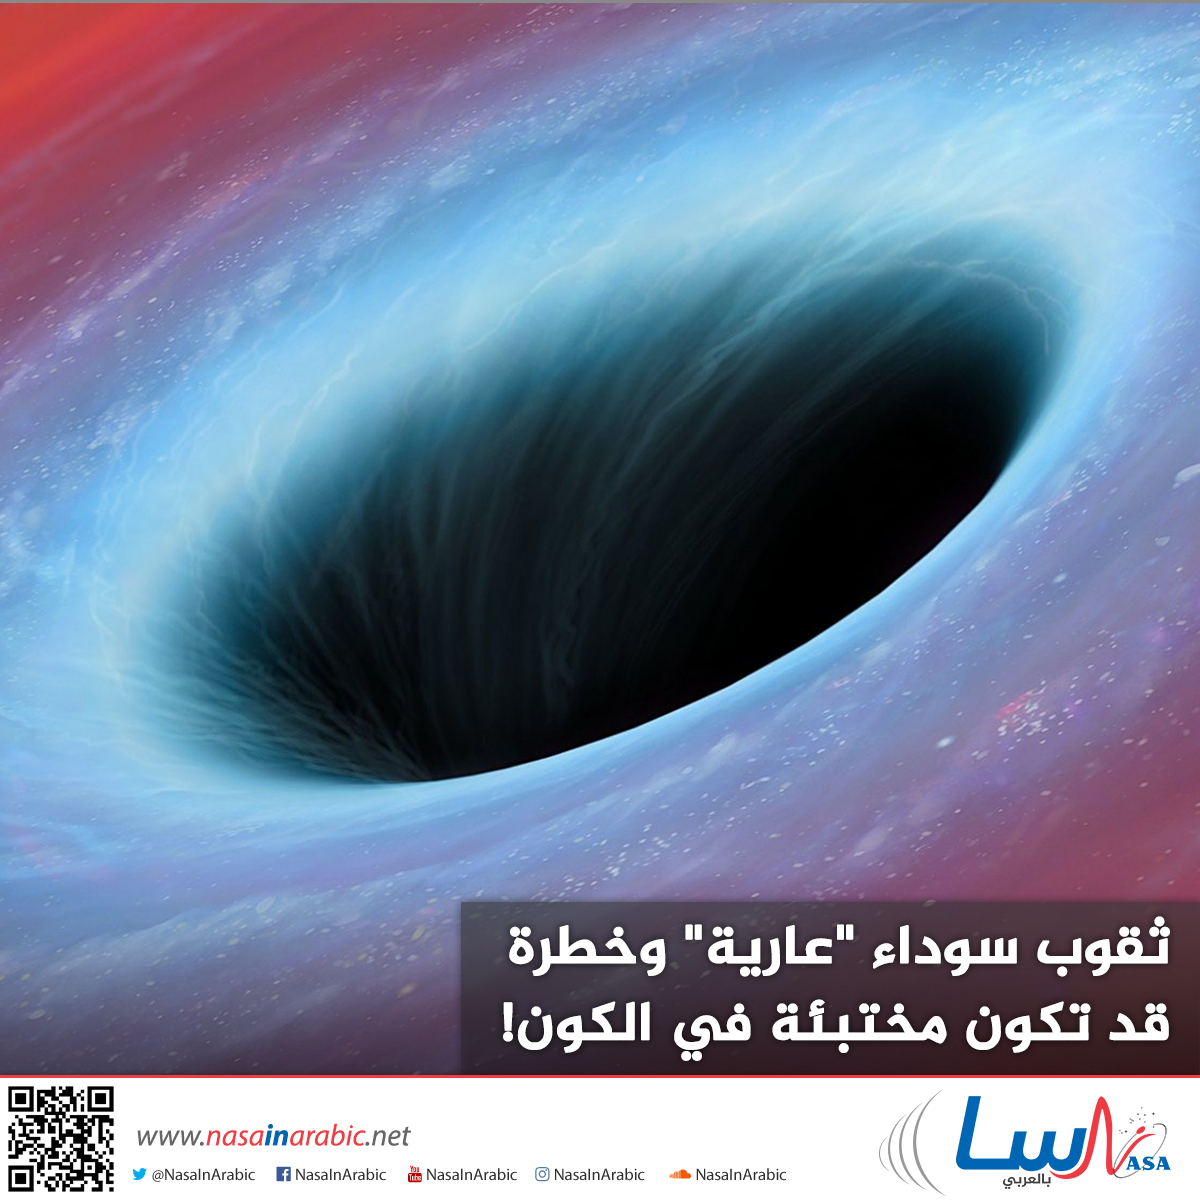 ثقوب سوداء “عارية” وخطرة قد تكون مختبئة في الكون!